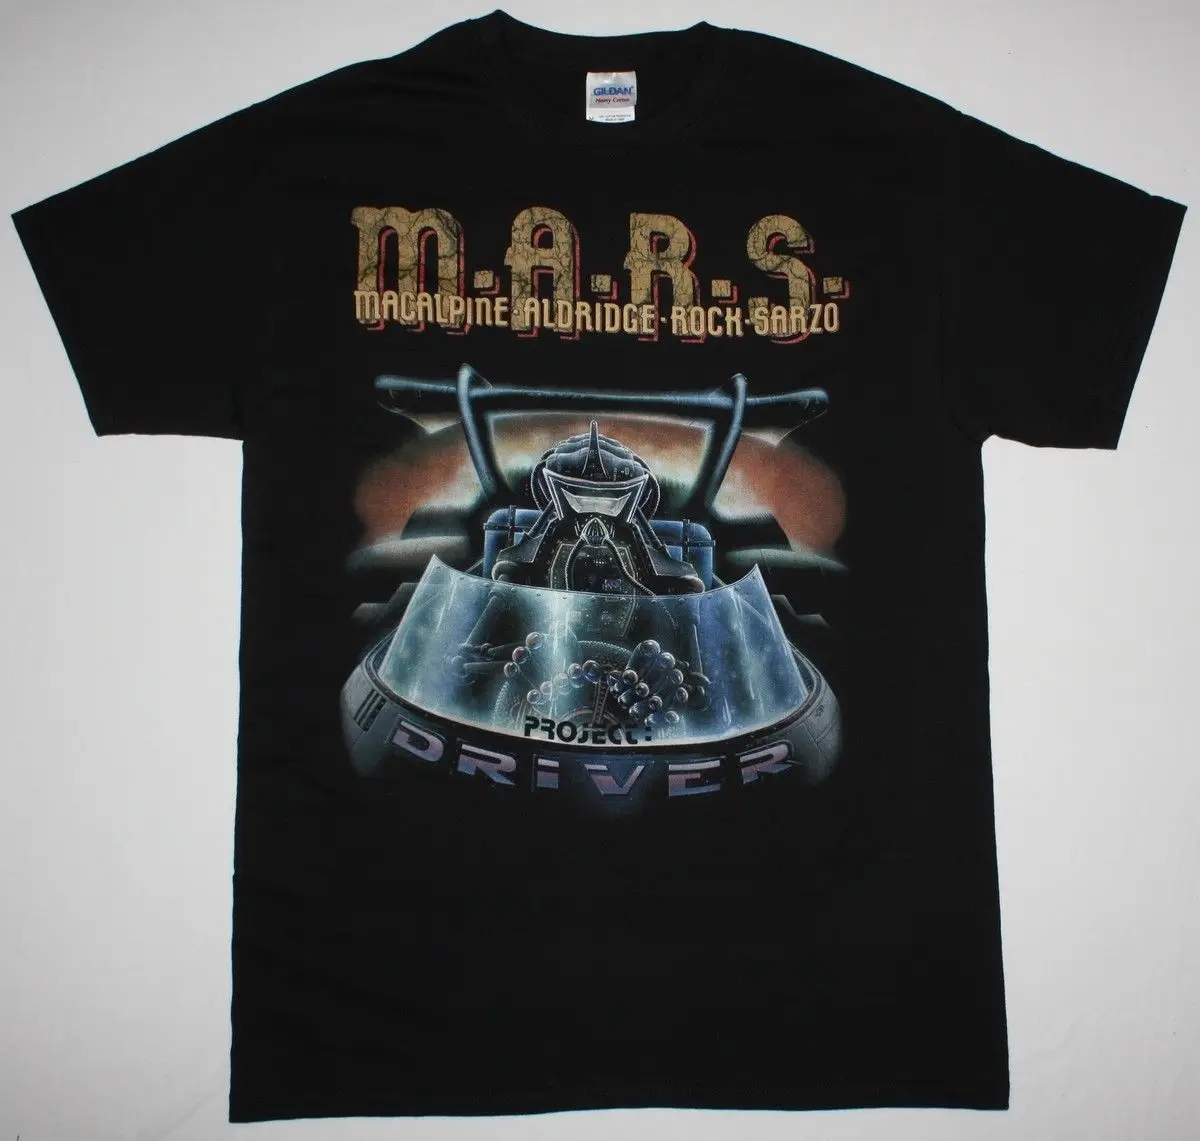 M.a.r.s. Проект драйвер черная футболка Марс группы macalpine sarzo Олдридж футболки |